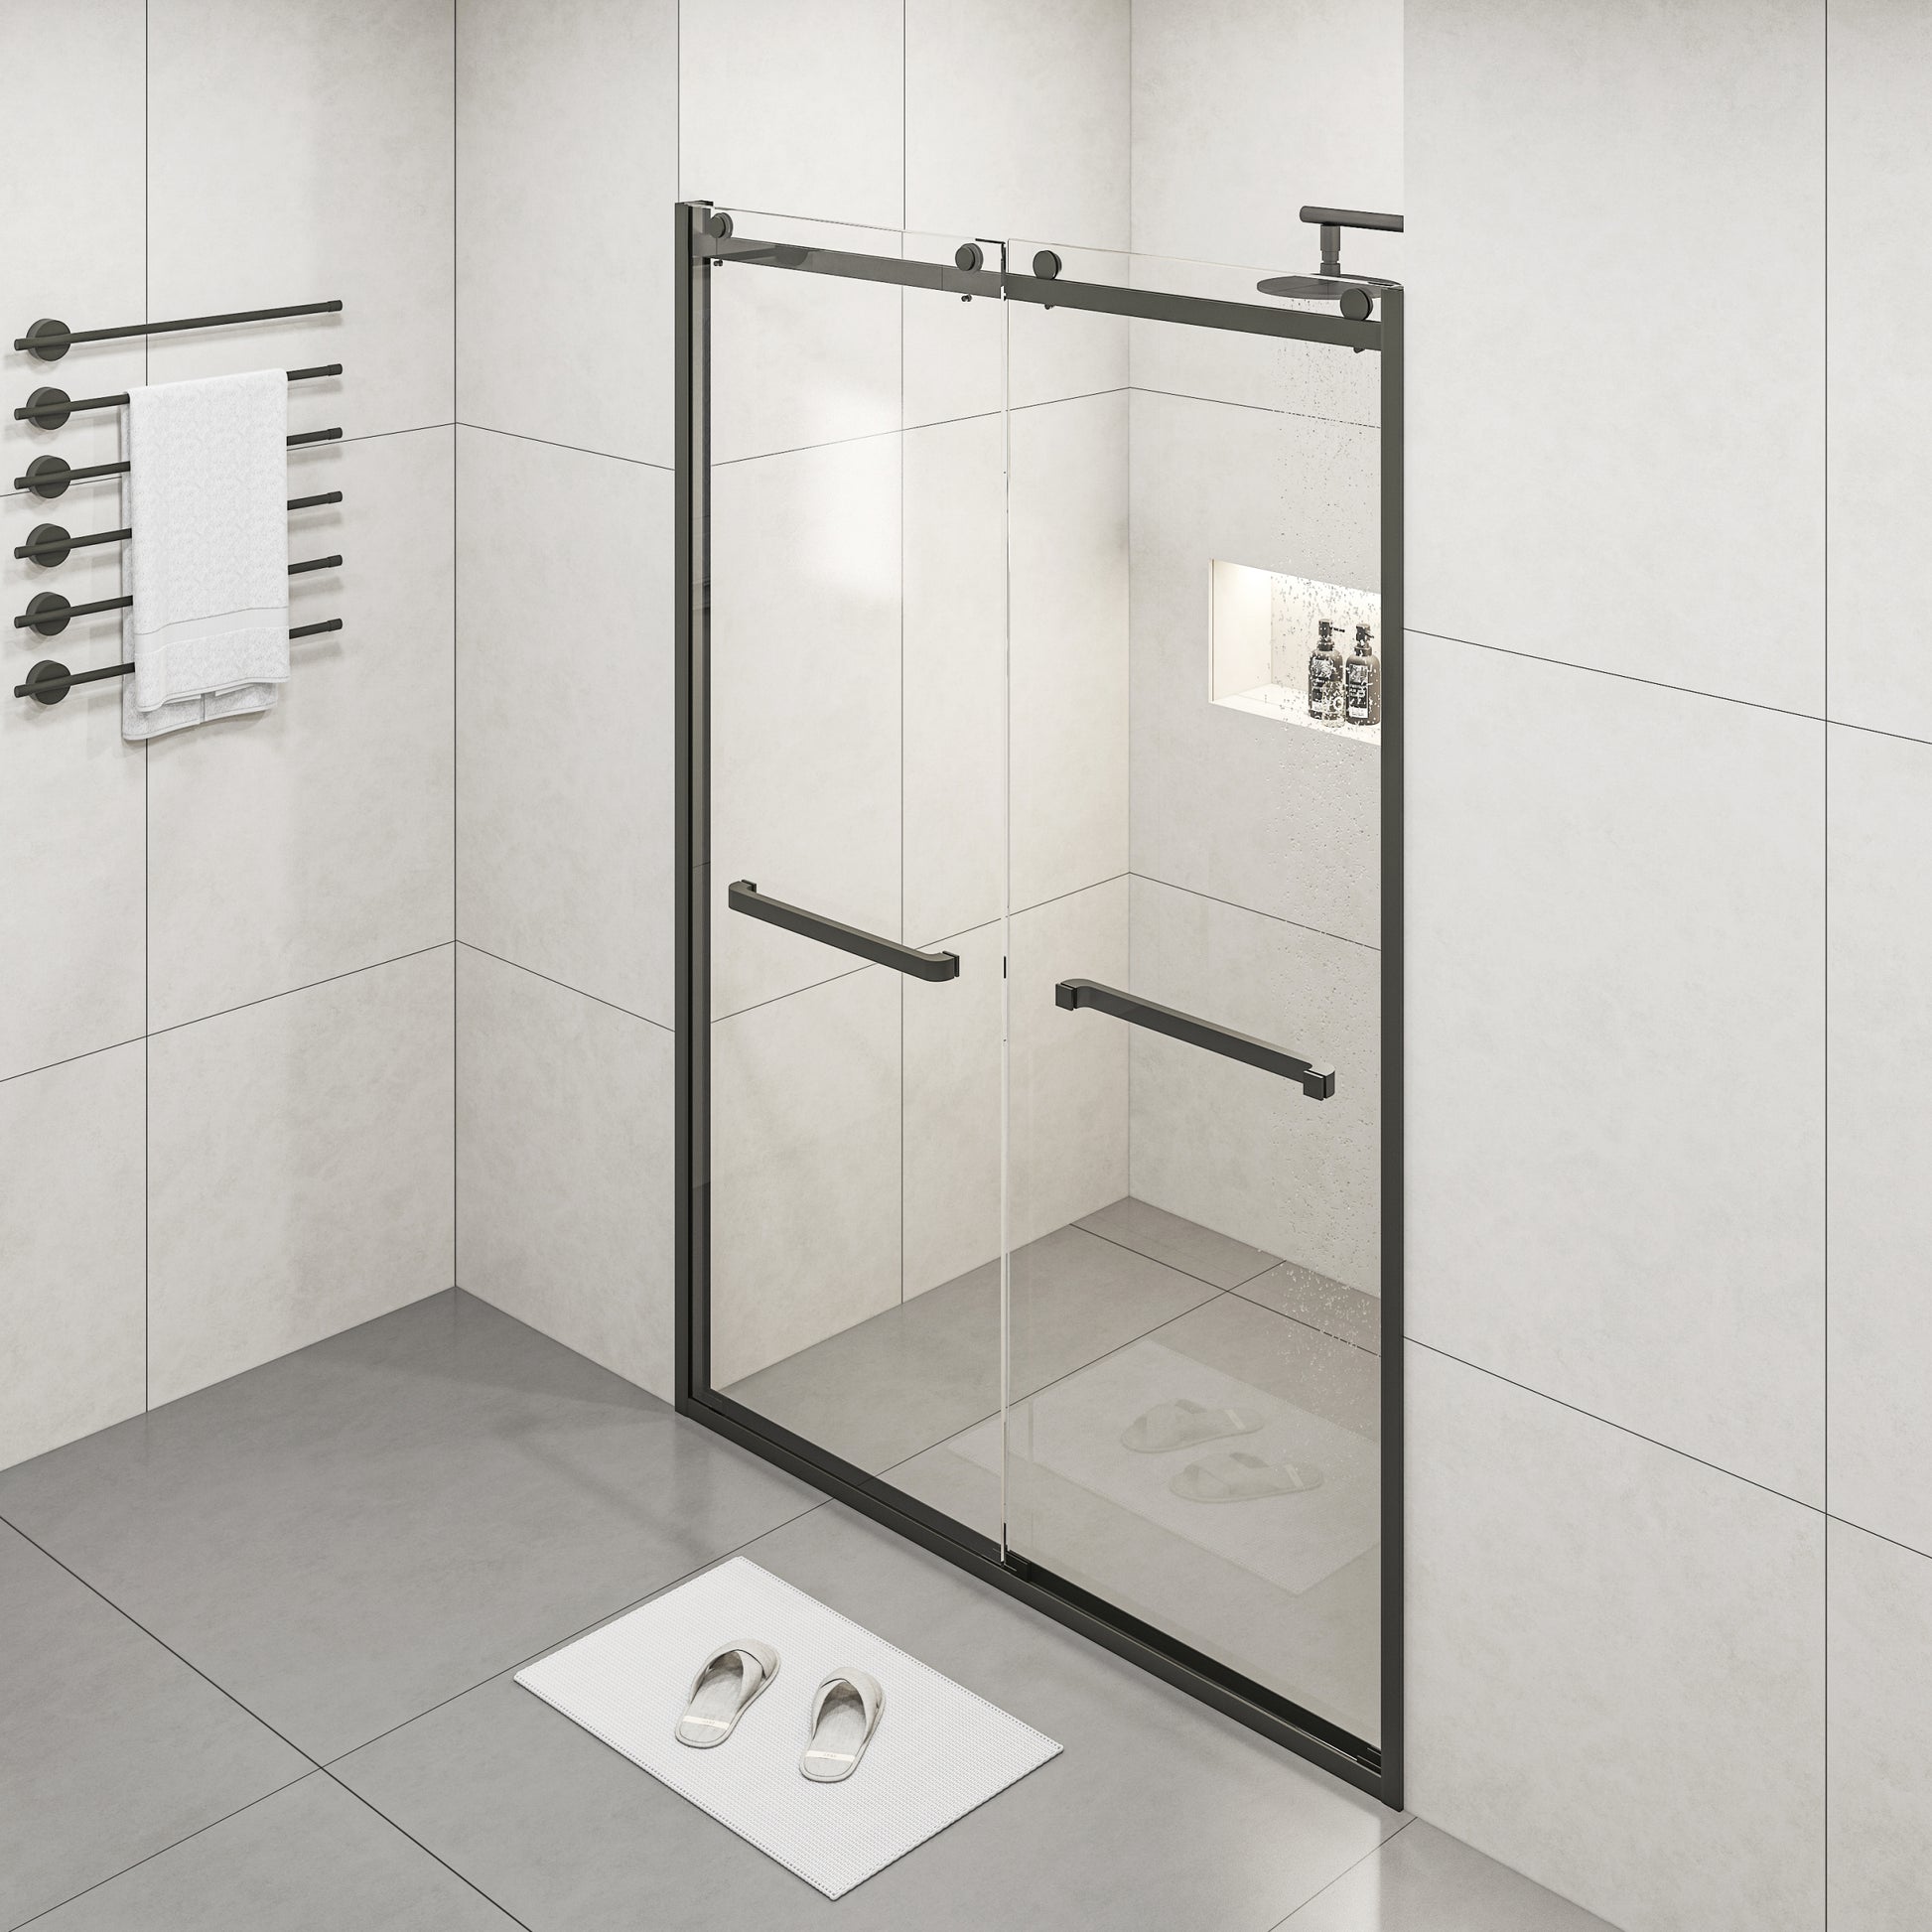 Semi frameless Double Sliding Glass Shower Doors,